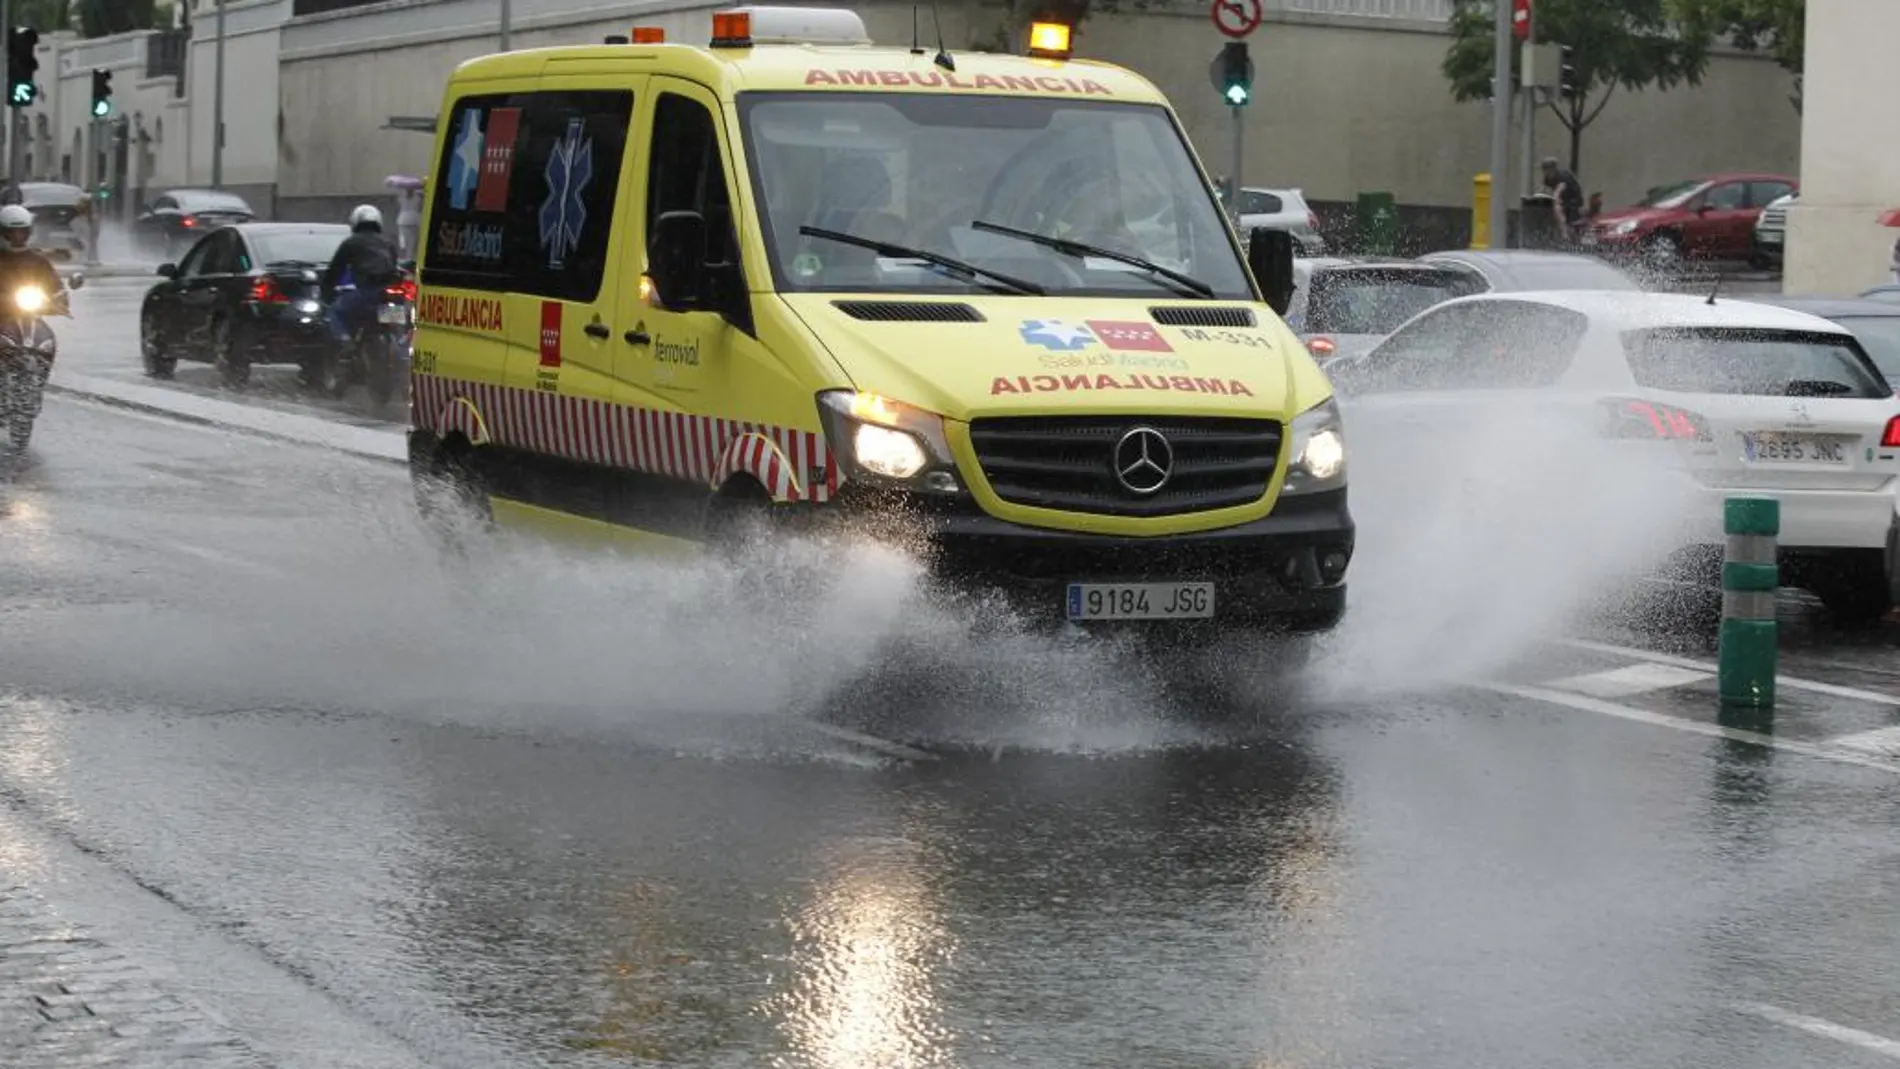 Una ambulancia a su paso por una calle de Madrid.